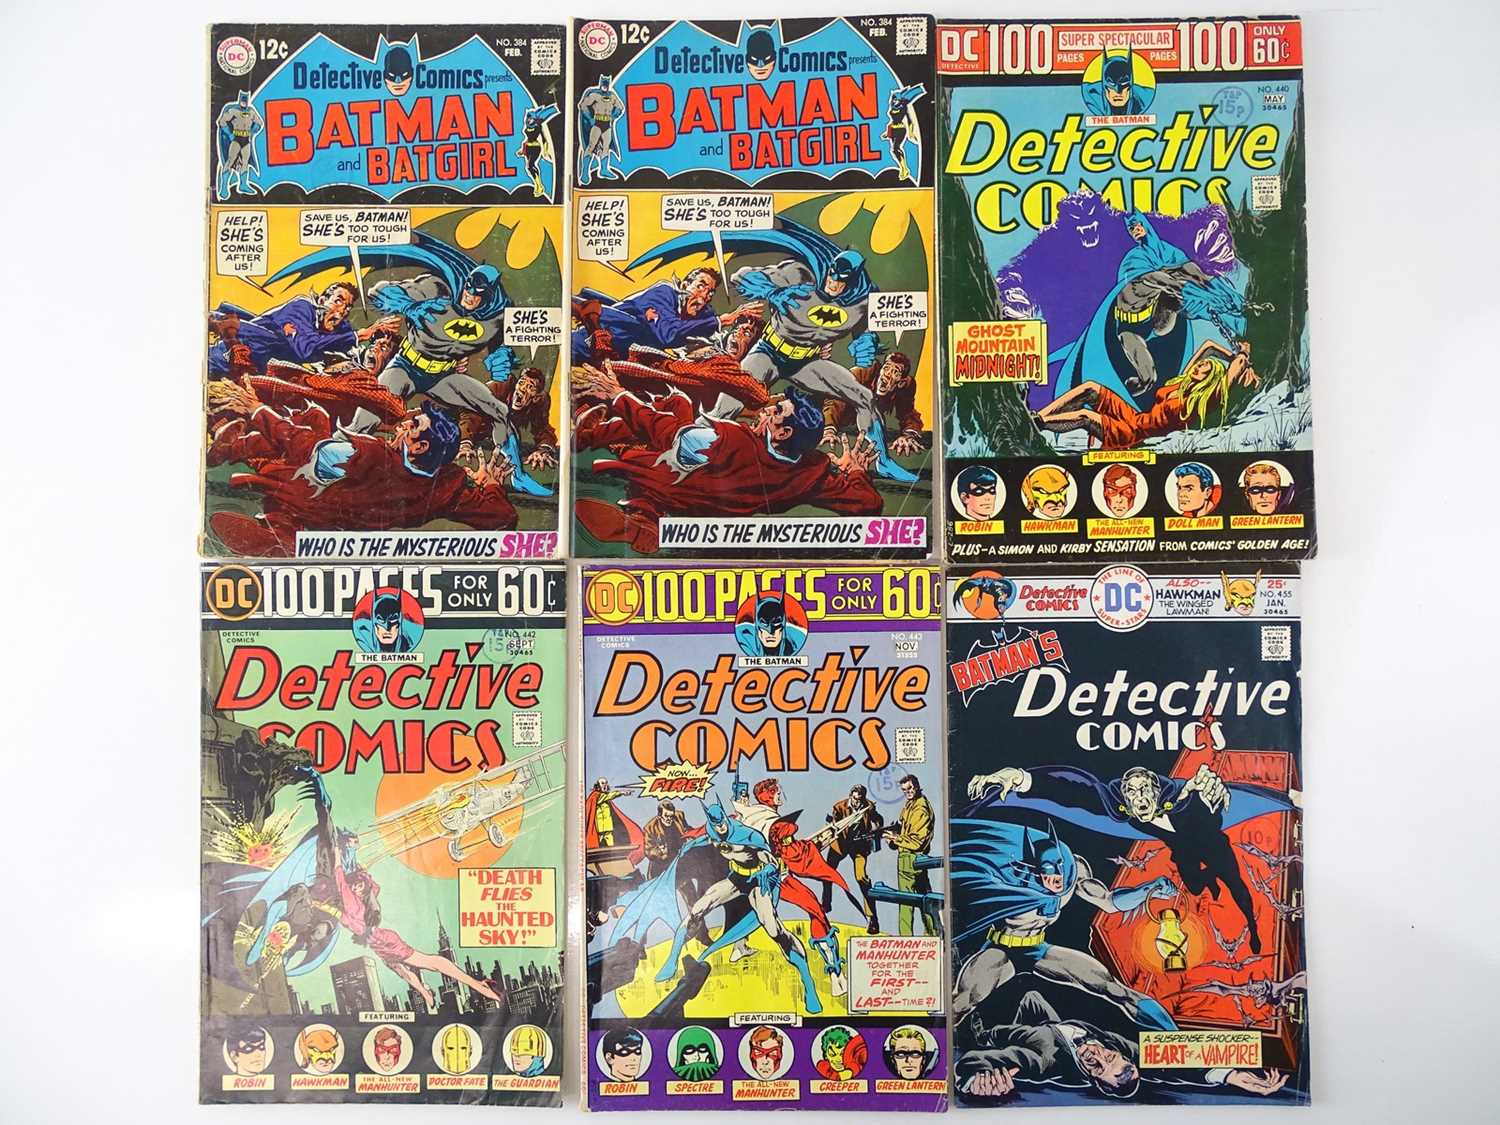 Lot 21 - DETECTIVE COMICS: BATMAN #384, 440, 442, 443,...